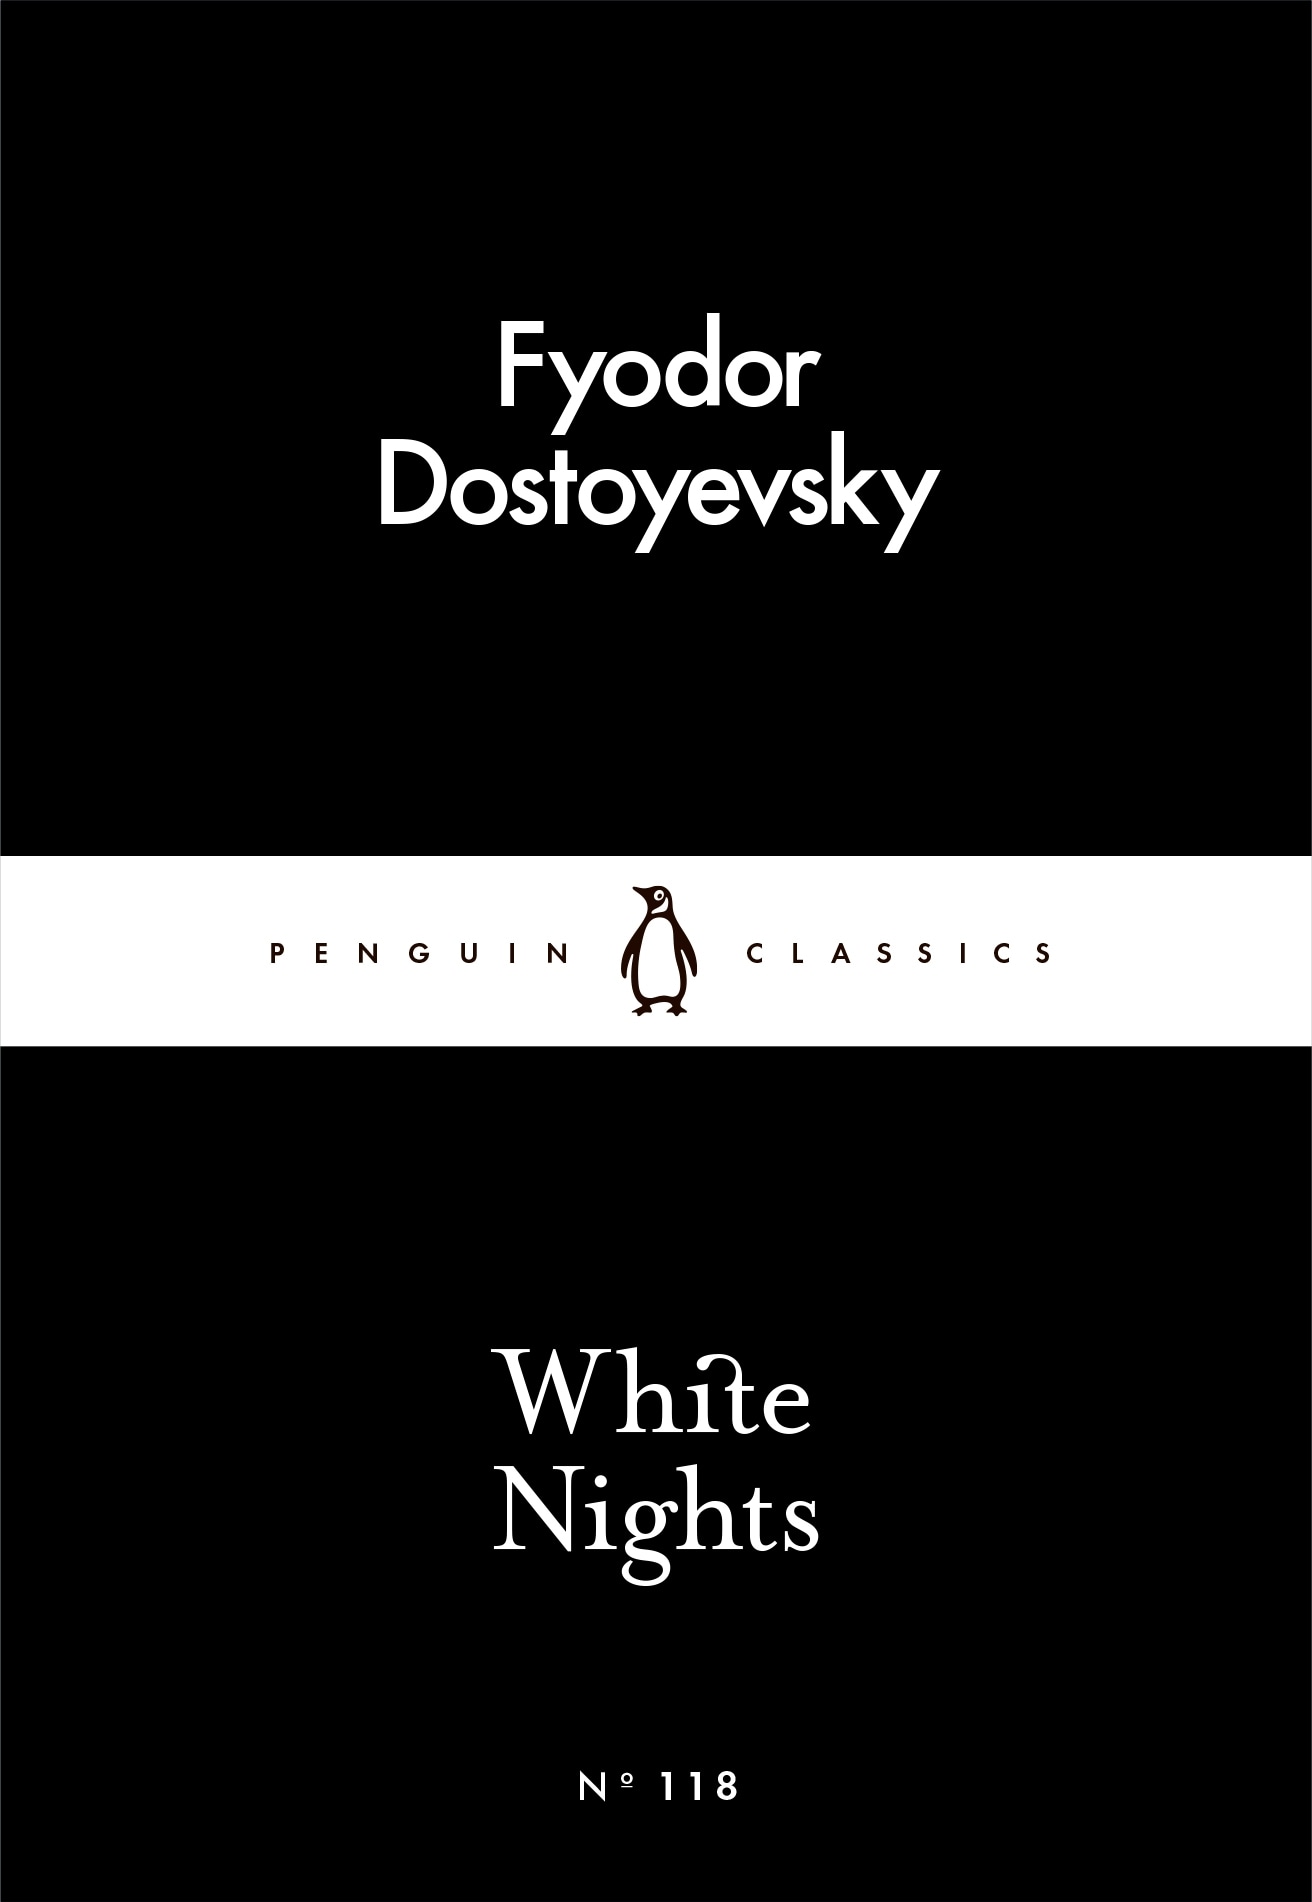 Book “White Nights” by Fyodor Dostoyevsky — March 3, 2016